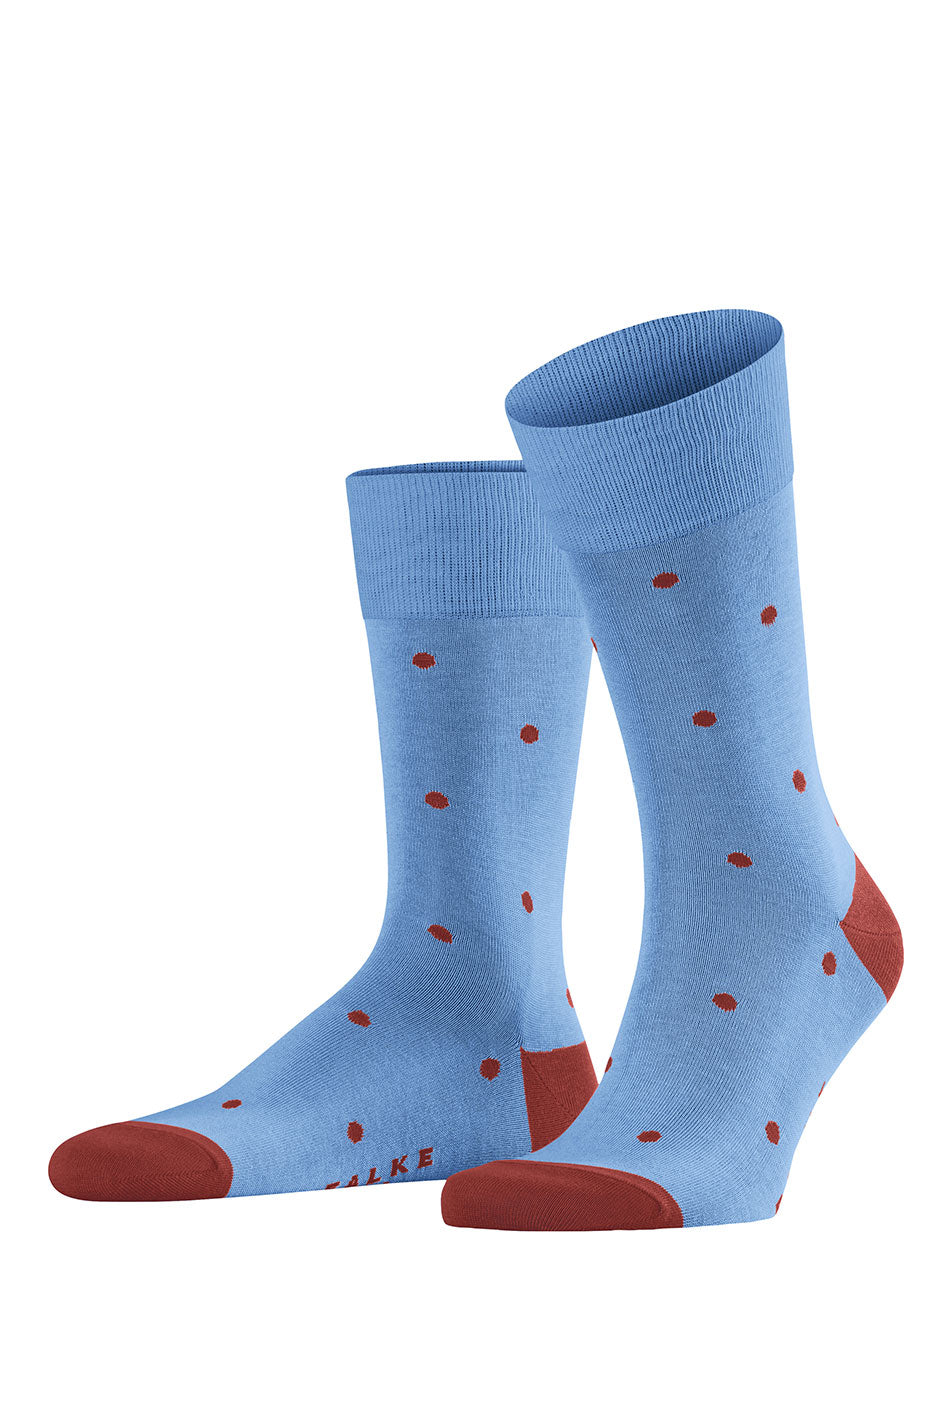 Falke Dot Men's Socks